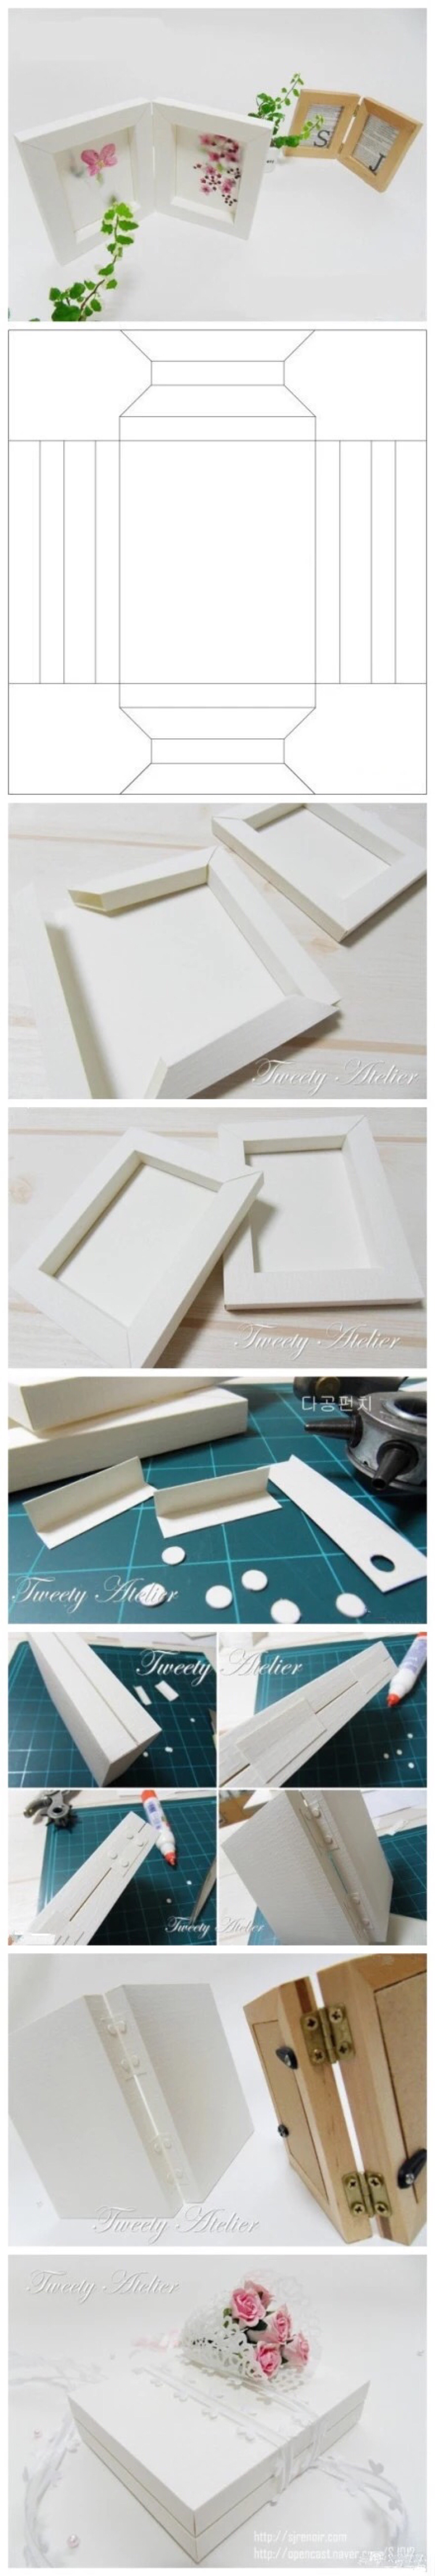 折纸-相框-剪纸